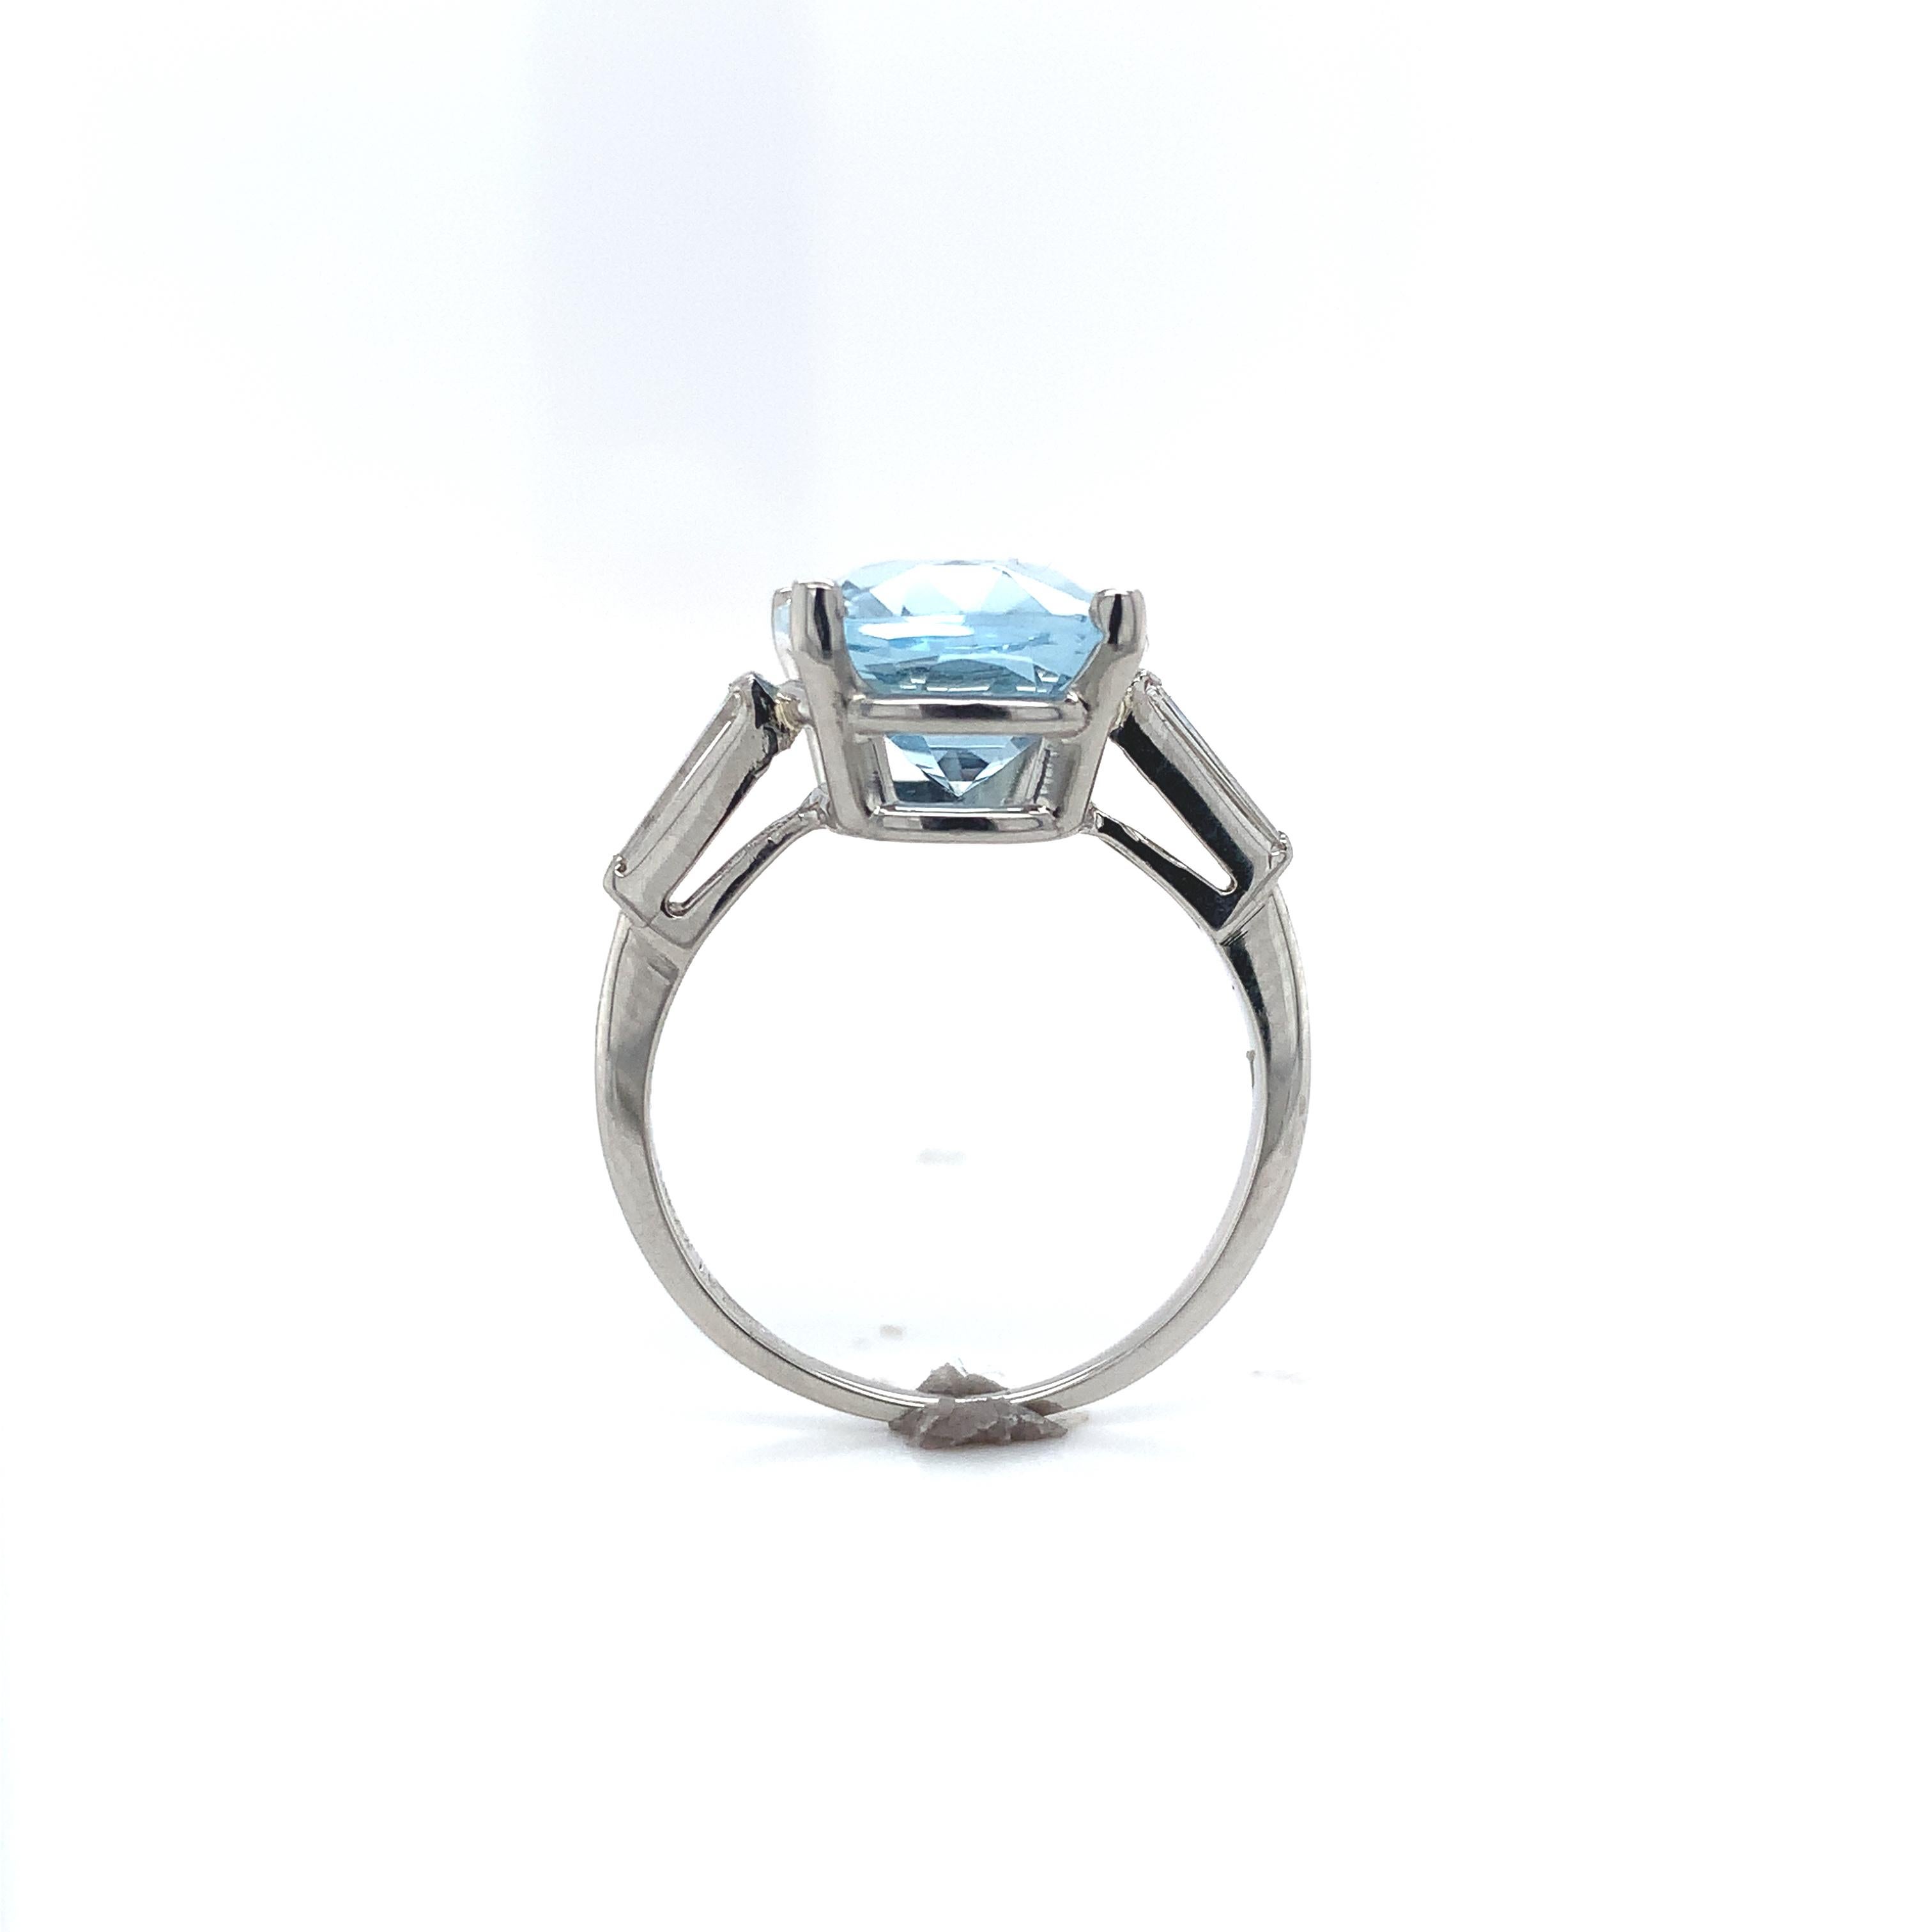 Platinring mit 4,71 Karat Aquamarin und Diamant. Der hellblaue Aquamarin ist eine schöne Spezialität im antiken Kissenschliff und misst etwa 12,3 mm x 9,8 mm. Es gibt 2 lange Diamanten Baguette Akzente messen etwa 5,5 mm x 2 mm. Der Ring passt auf